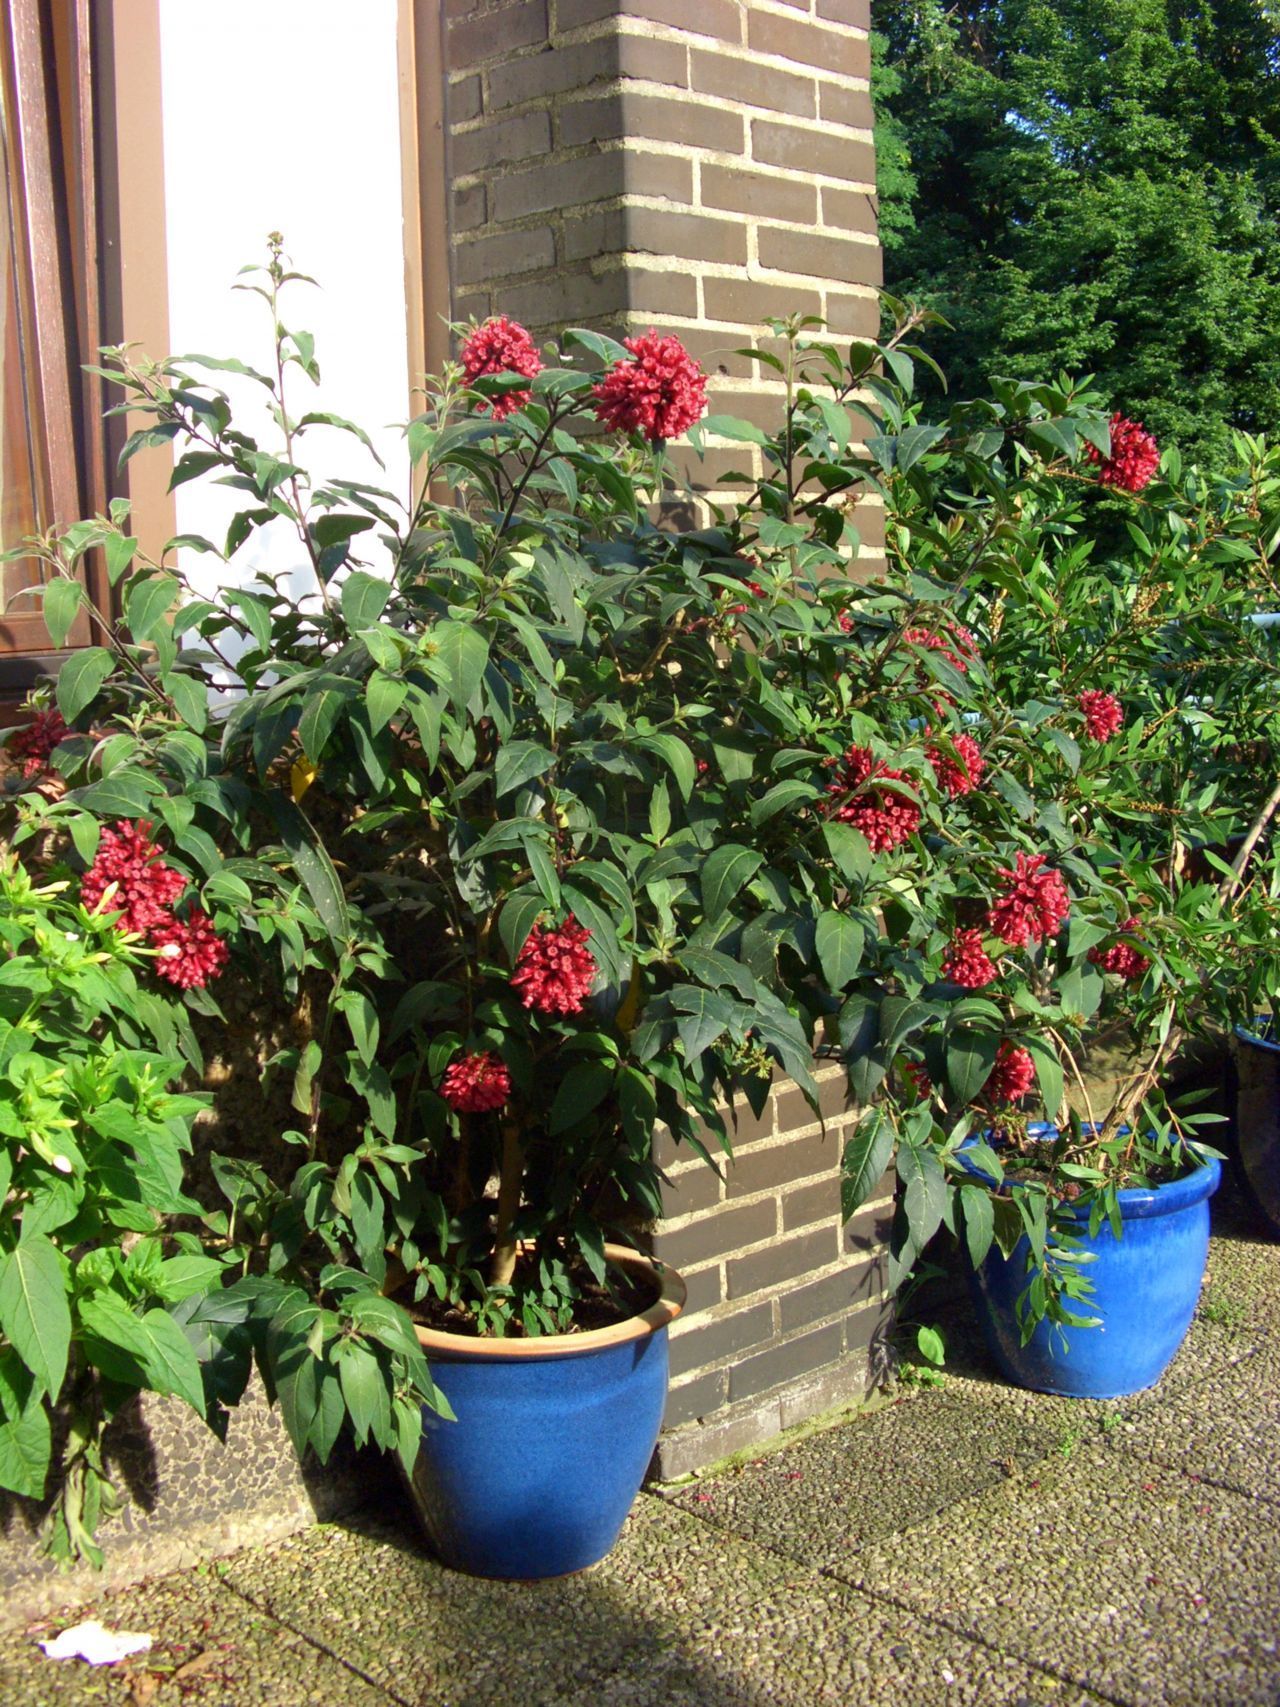 Kälteempfindliche Topfpflanzen solltest du erst ins Freie stellen, wenn es warm genug ist, also dauerhaft mindestens 10 °C.